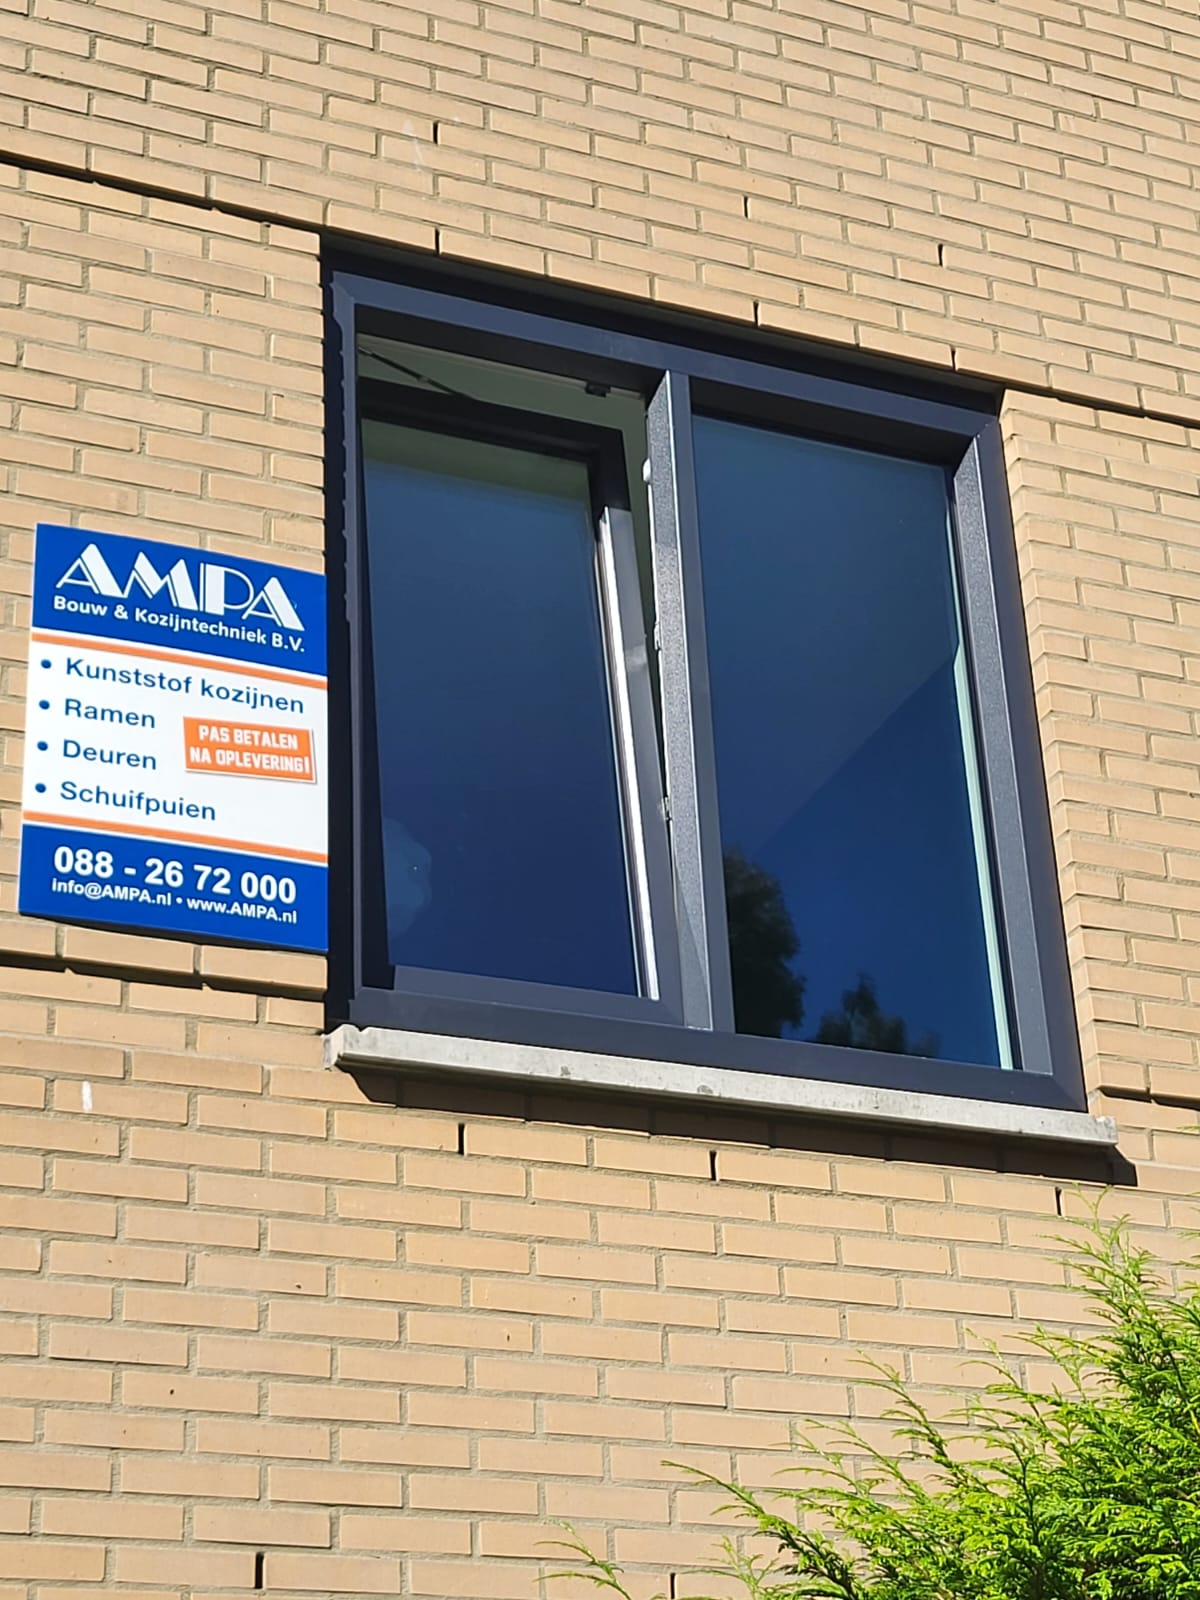 AMPA Kunststof kozijnen geplaatst in Arnhem